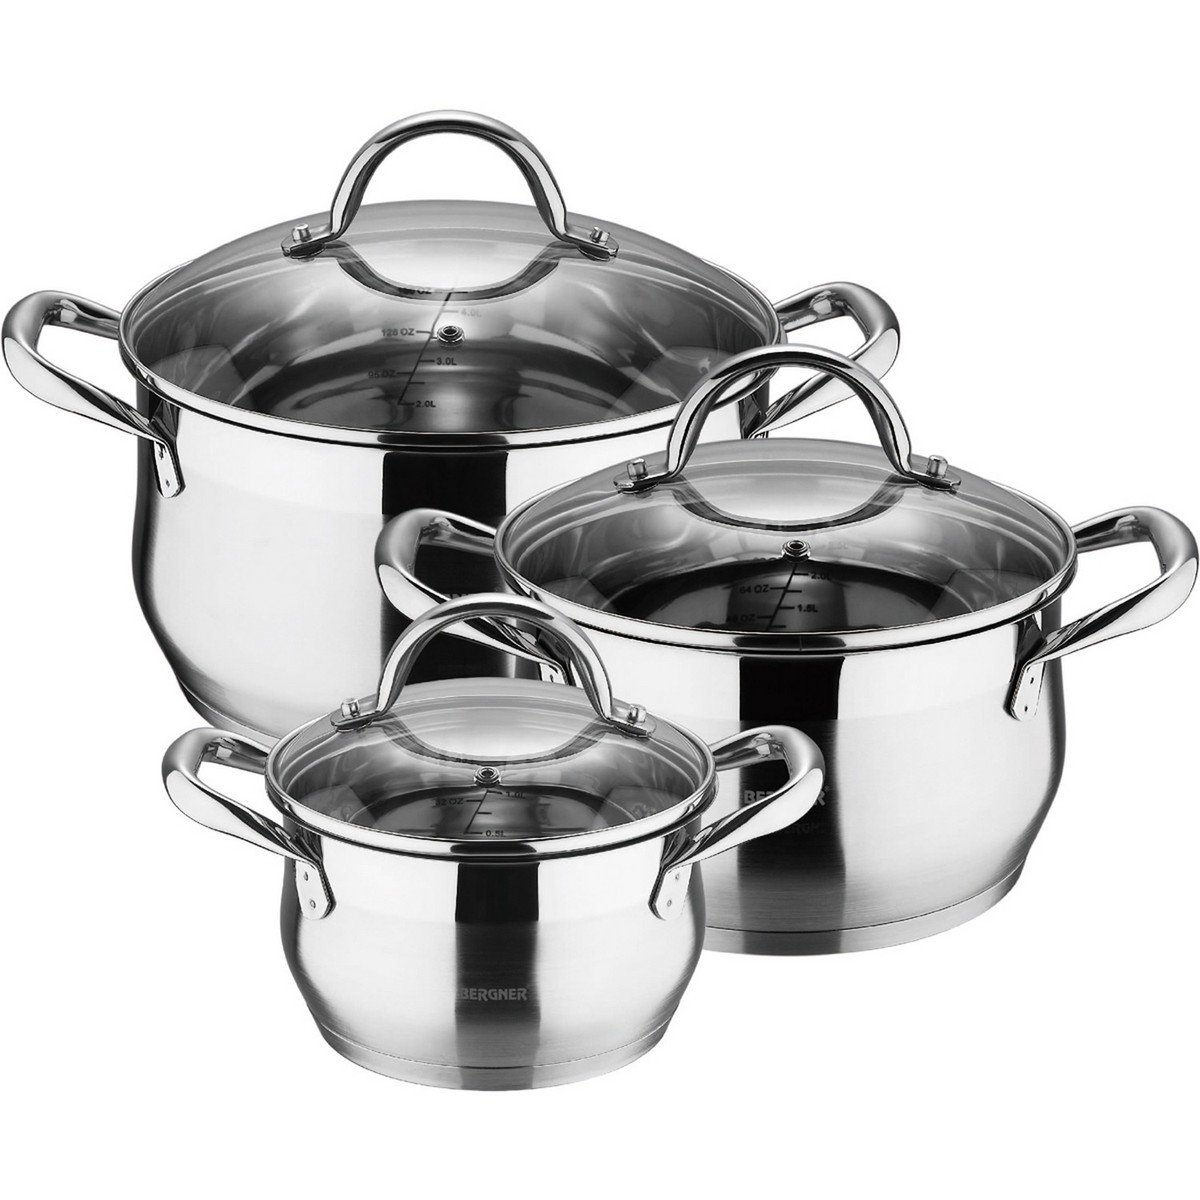 Bergner Stainless Steel Cookware Set 6pcs BG6373